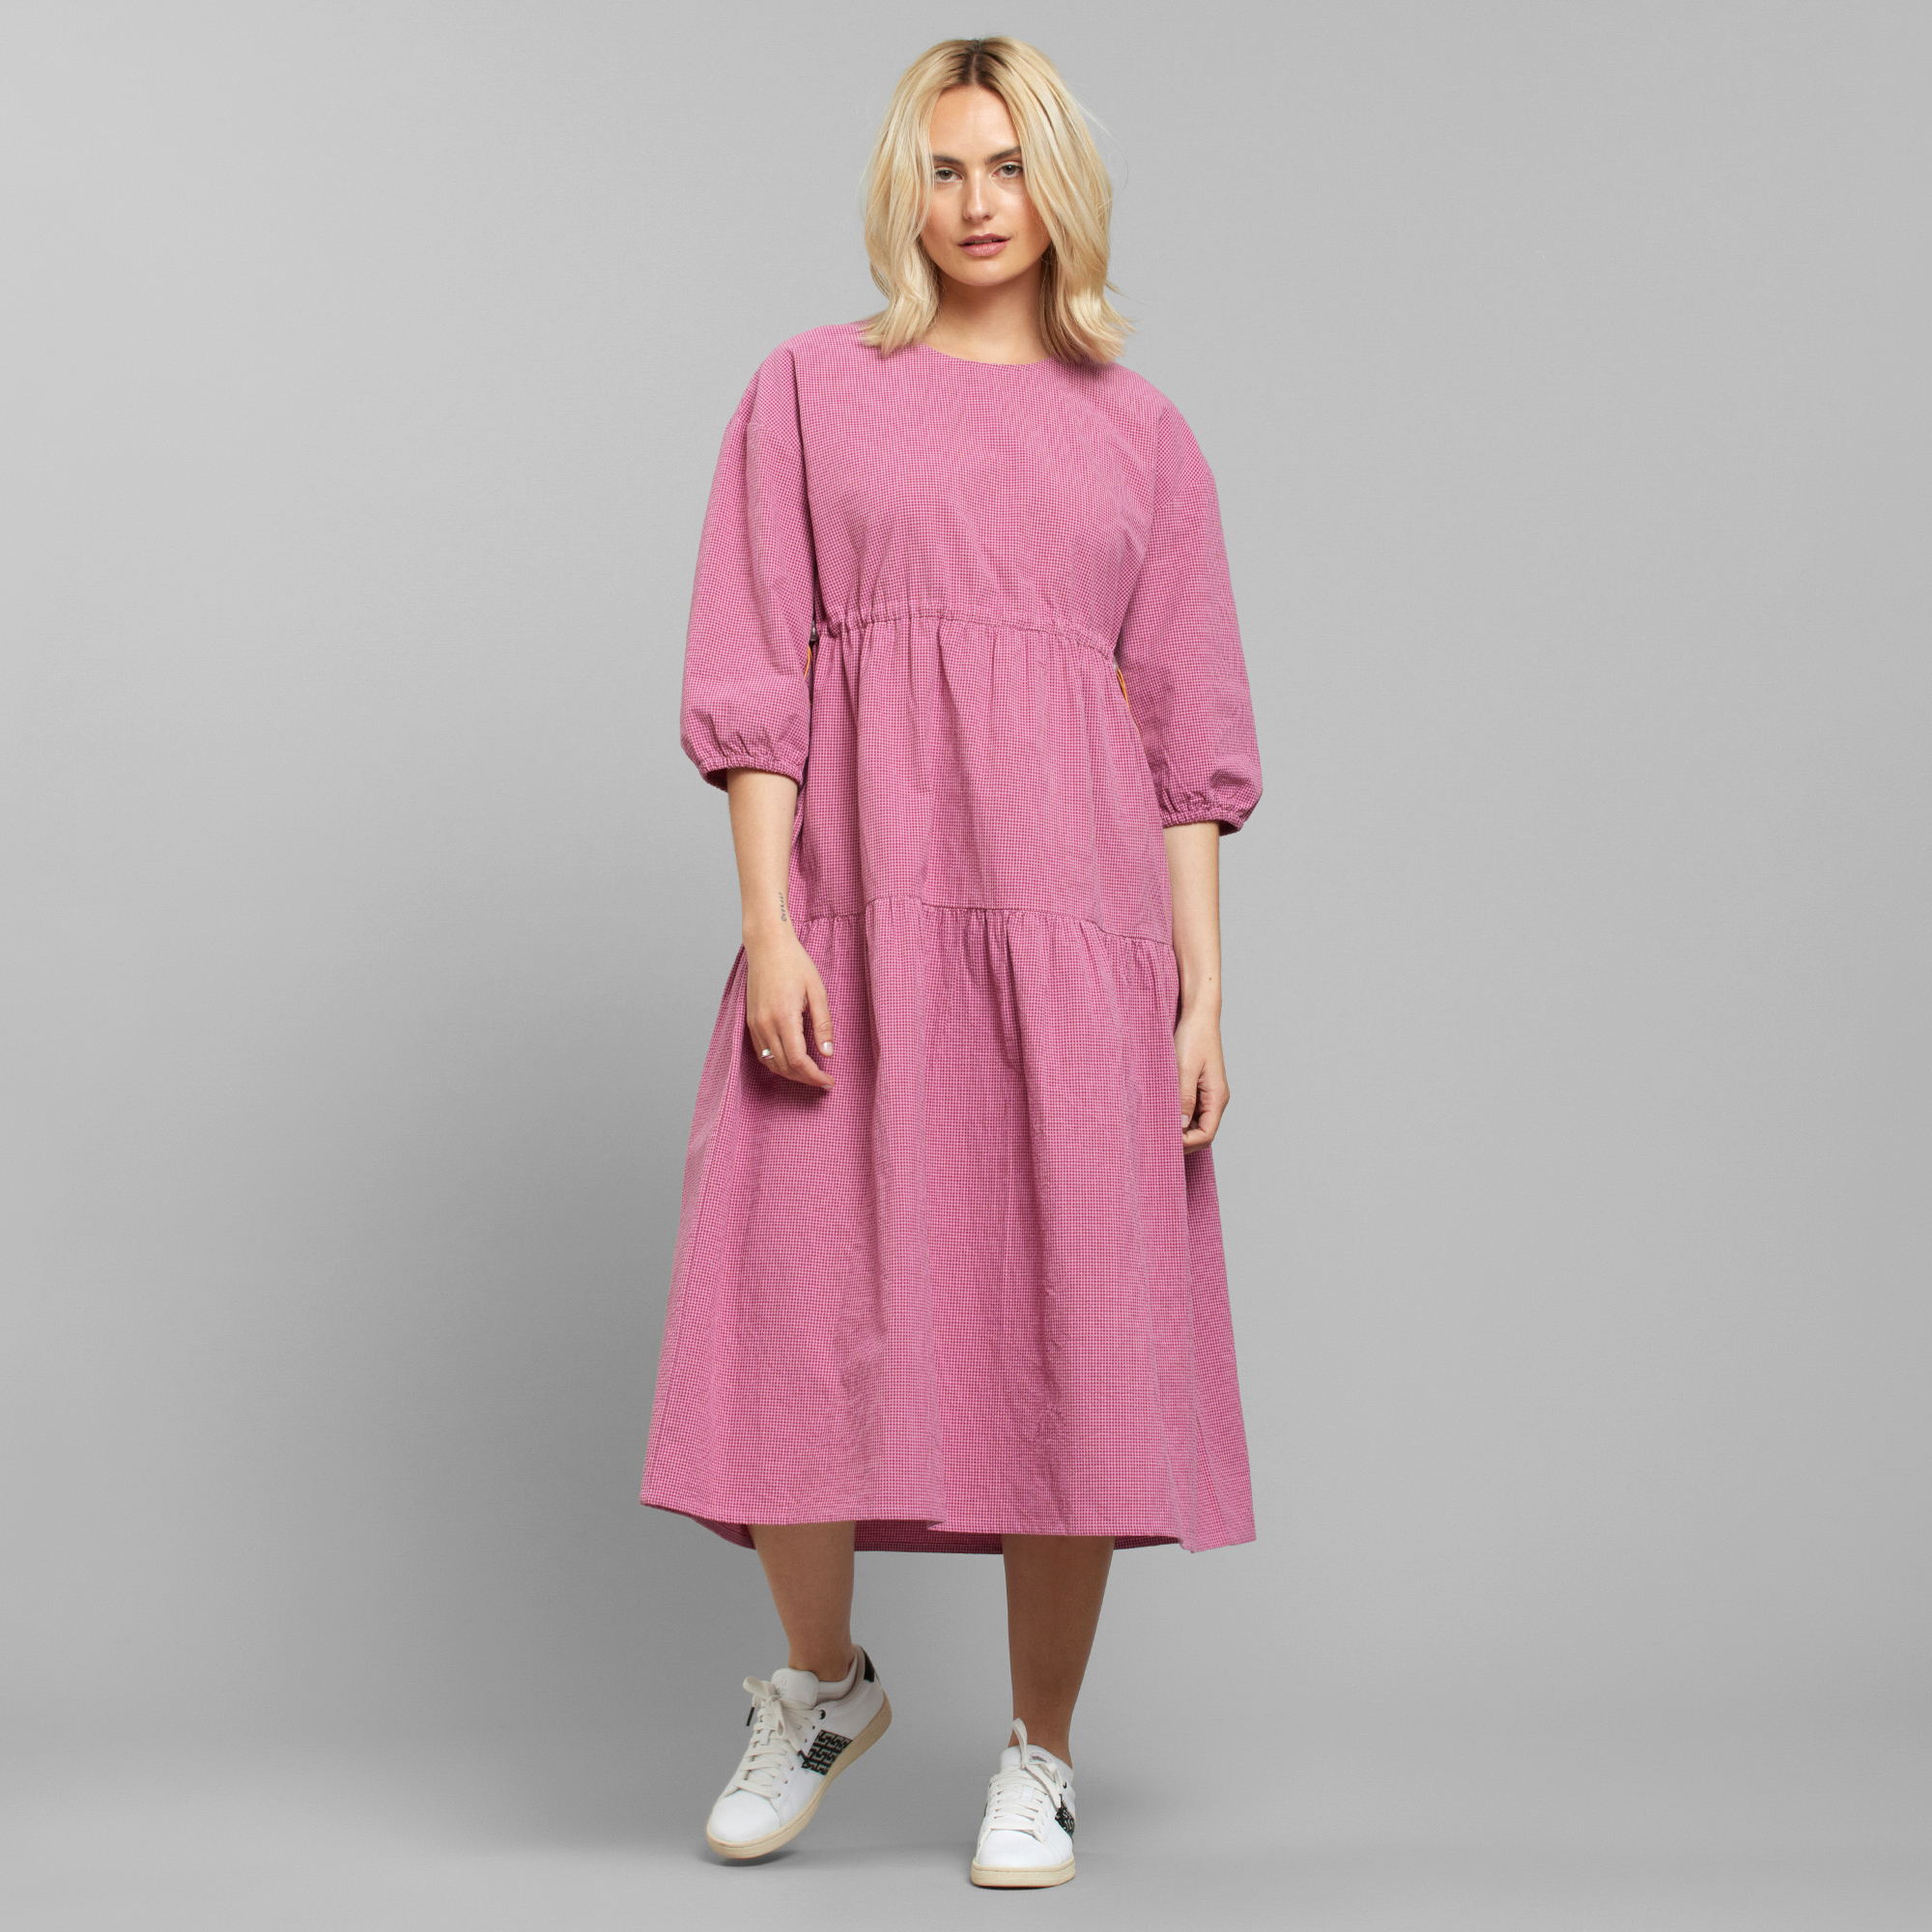 Hej violet Socialisme Dress fejan - cashmere pink - Donnyadoll